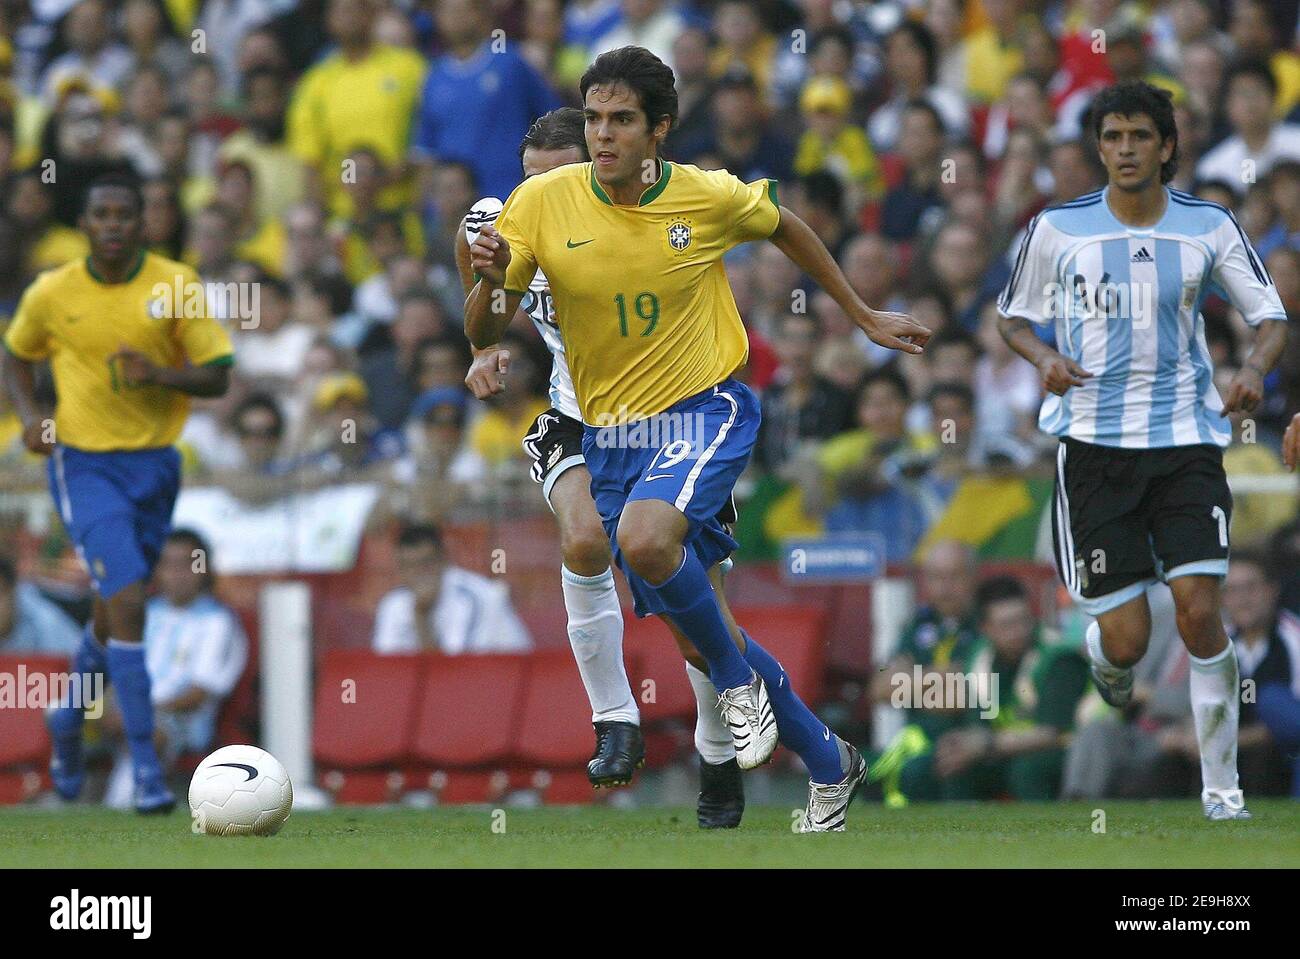 Kaká relembra gol na estreia em 2006 e incentiva seleção